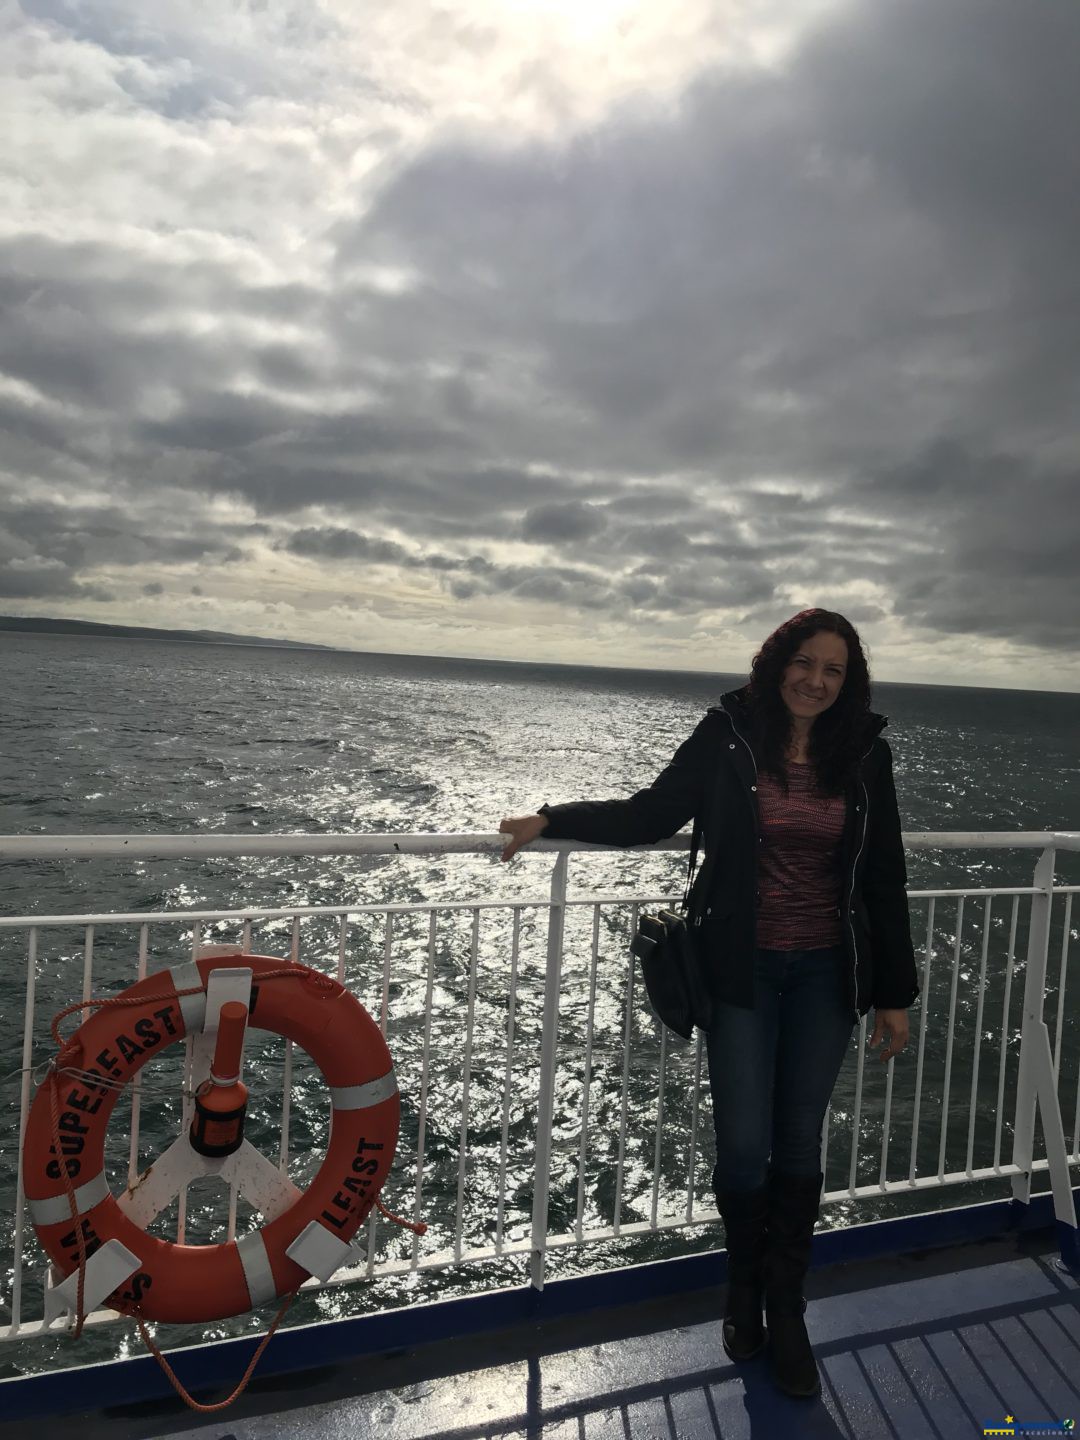 En el ferry  de Stena Line!!! Camino a Irlanda vaya manera de buque.